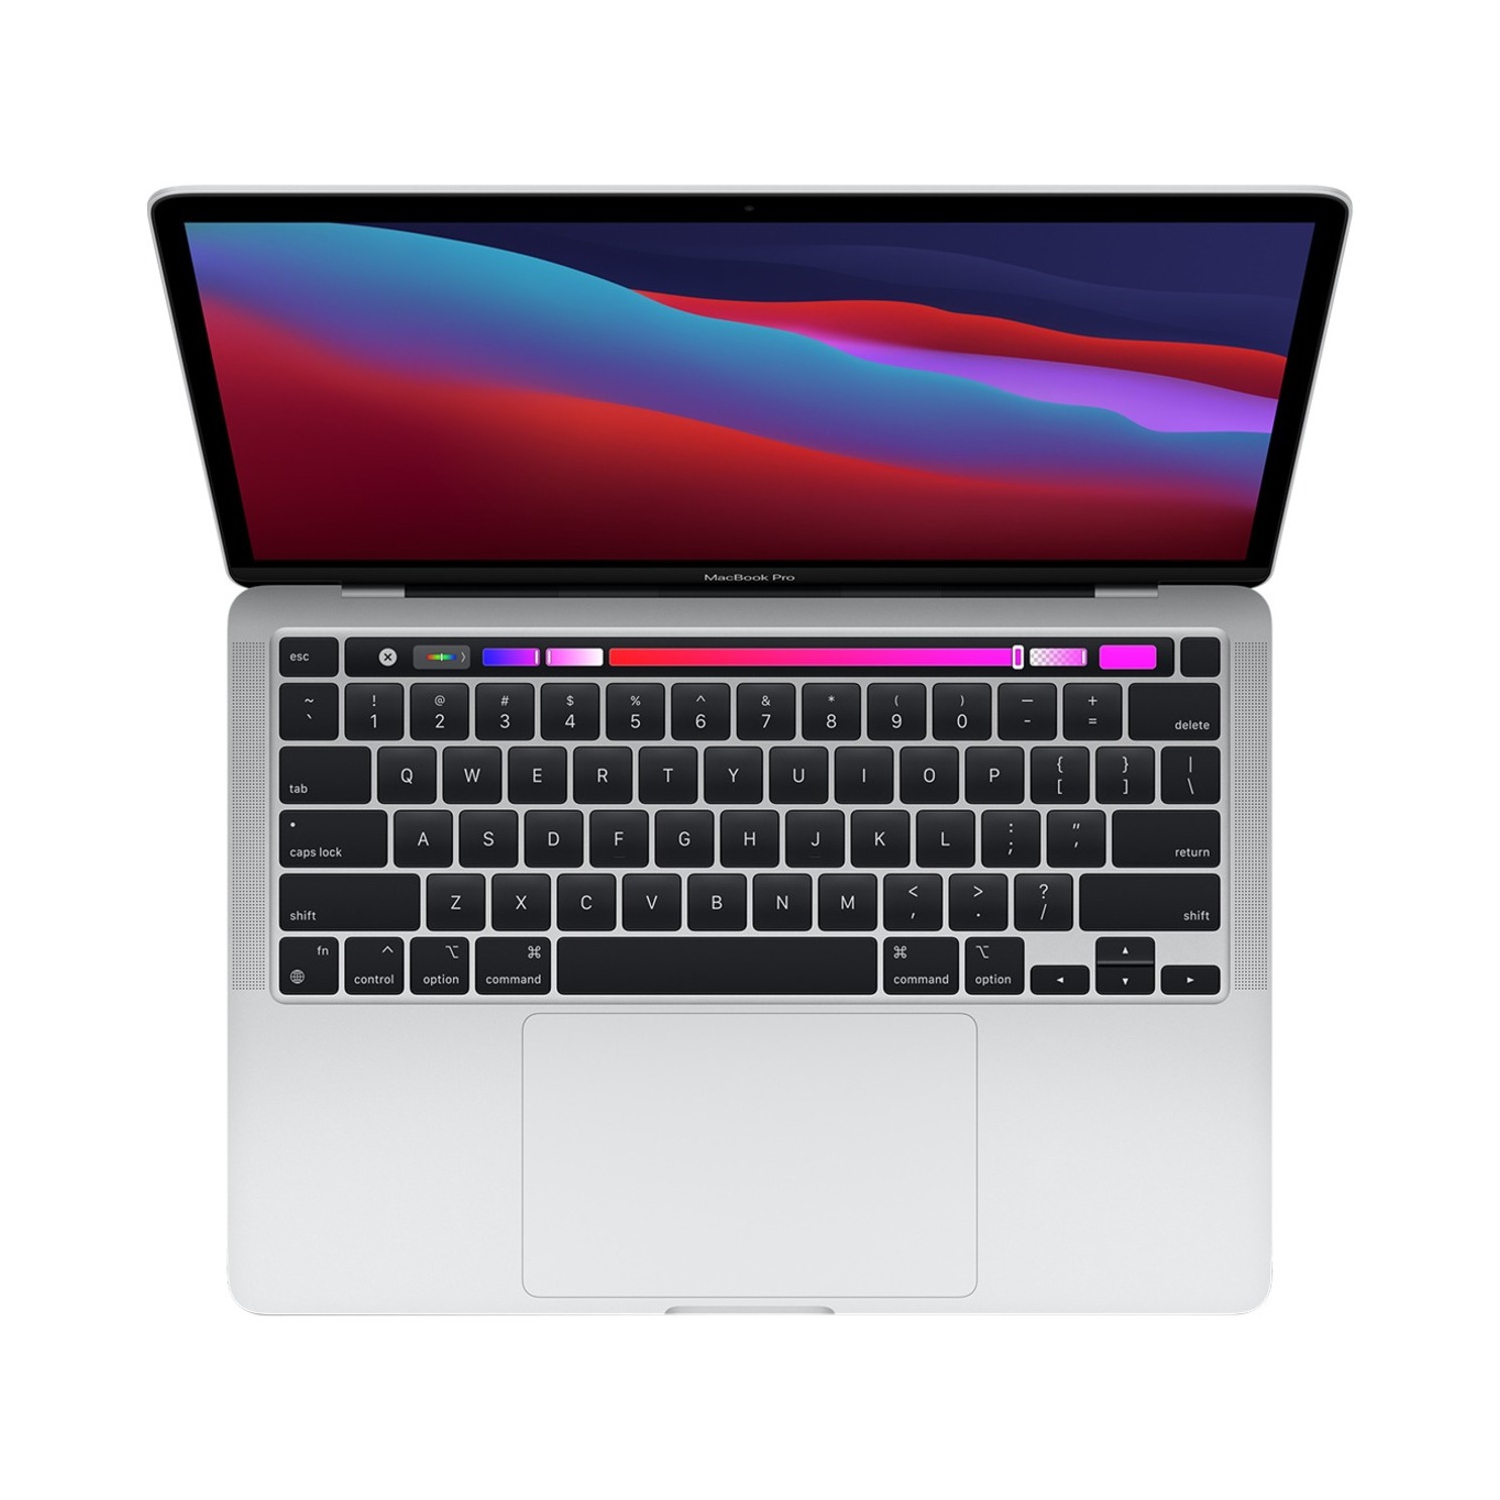 Apple MacBook Pro 13.3" w/ Touch Bar (Fall 2020) - Silver (Apple M1 Chip / 256GB SSD / 8GB RAM) - En - NEW IN BOX